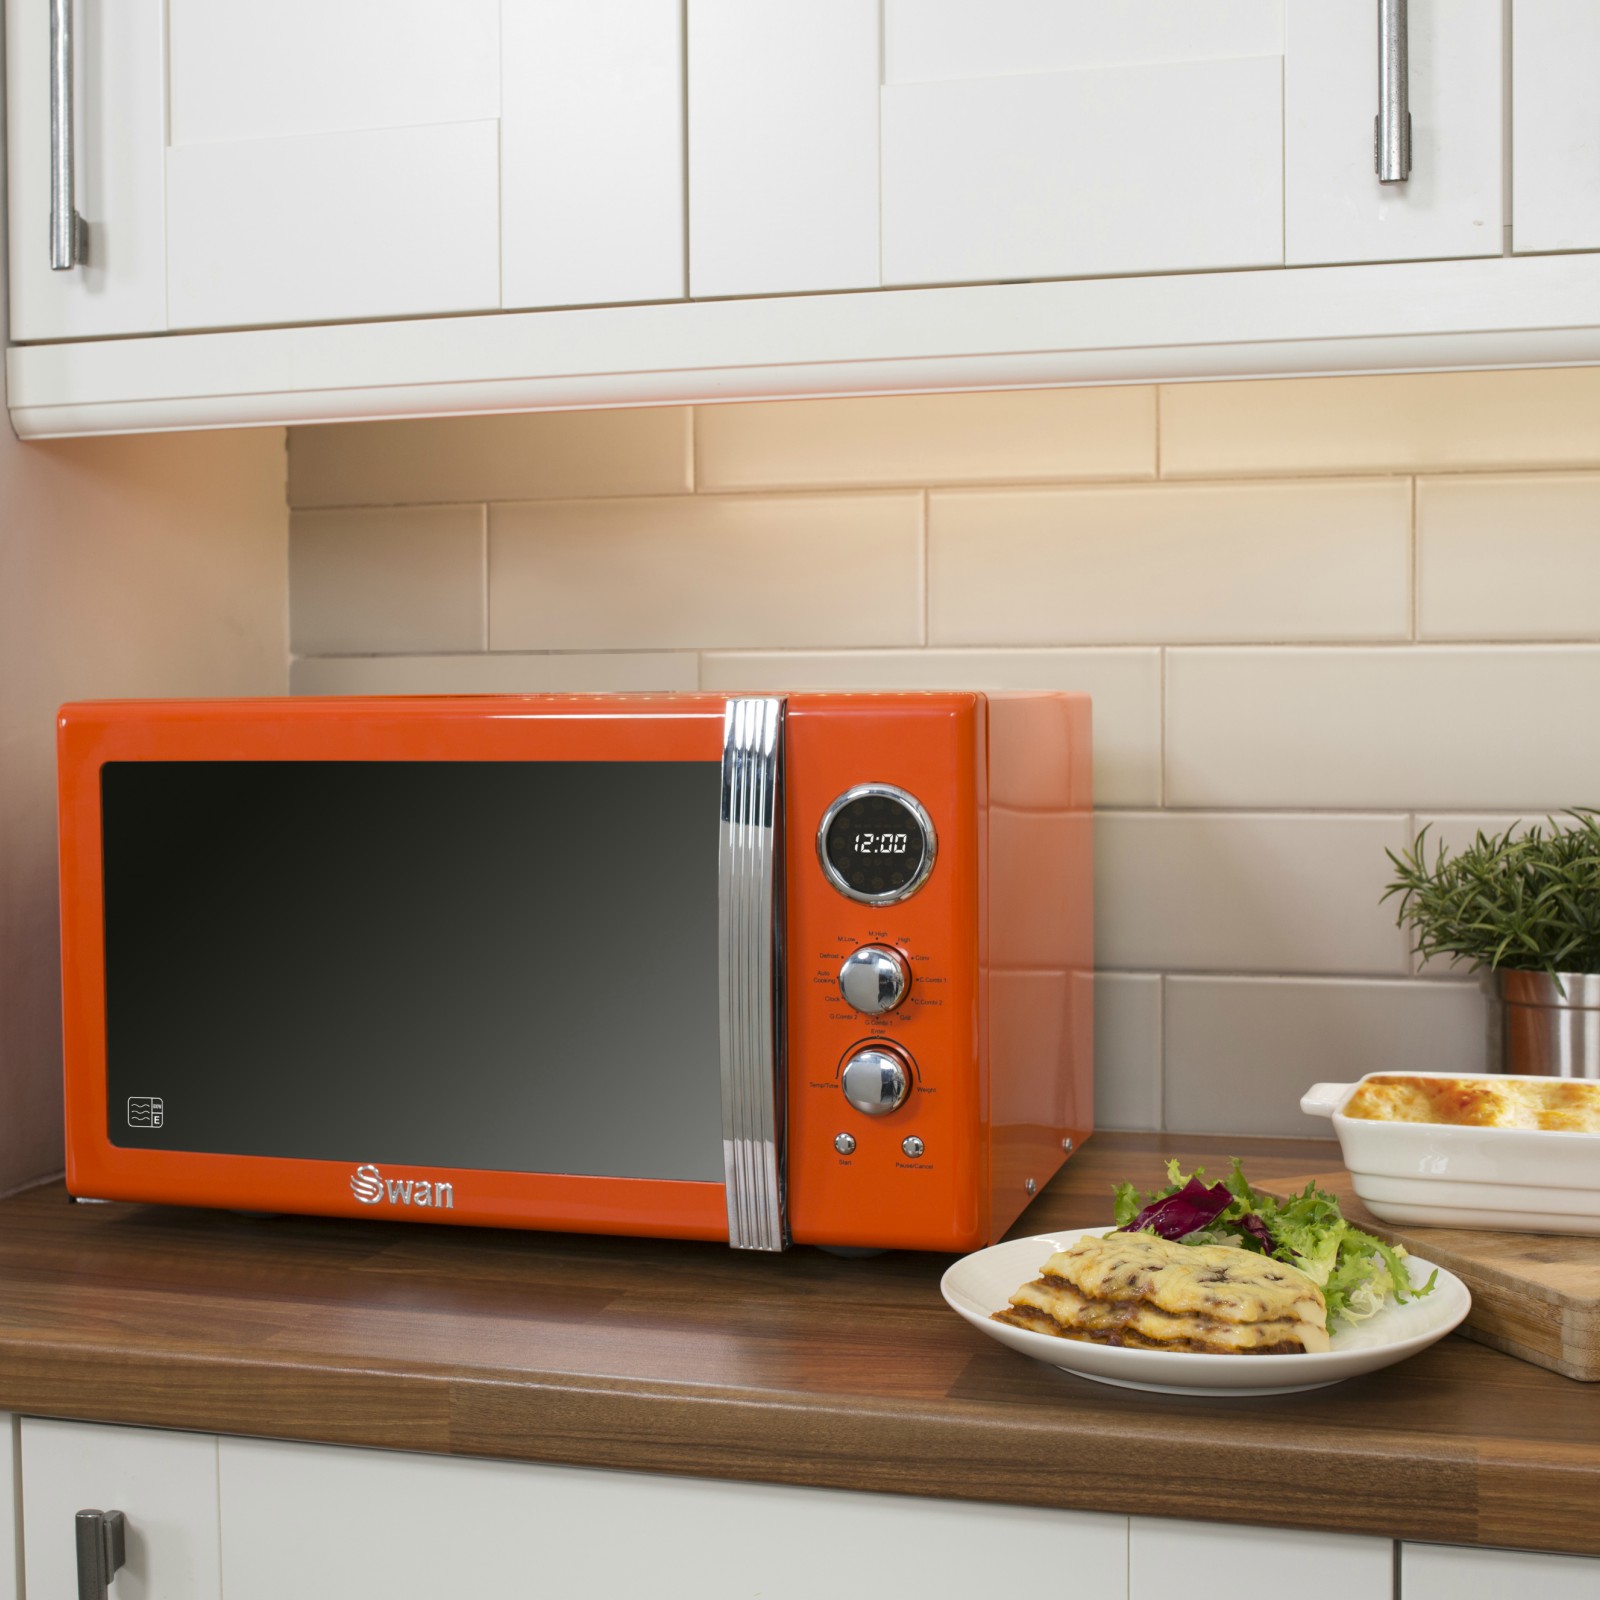 Установить свч. Микроволновая печь Hofmann HMW-720ss. Микроволновая печь Microwave Oven. Микроволновка в интерьере кухни. Микроволновая печь в интерьере кухни.